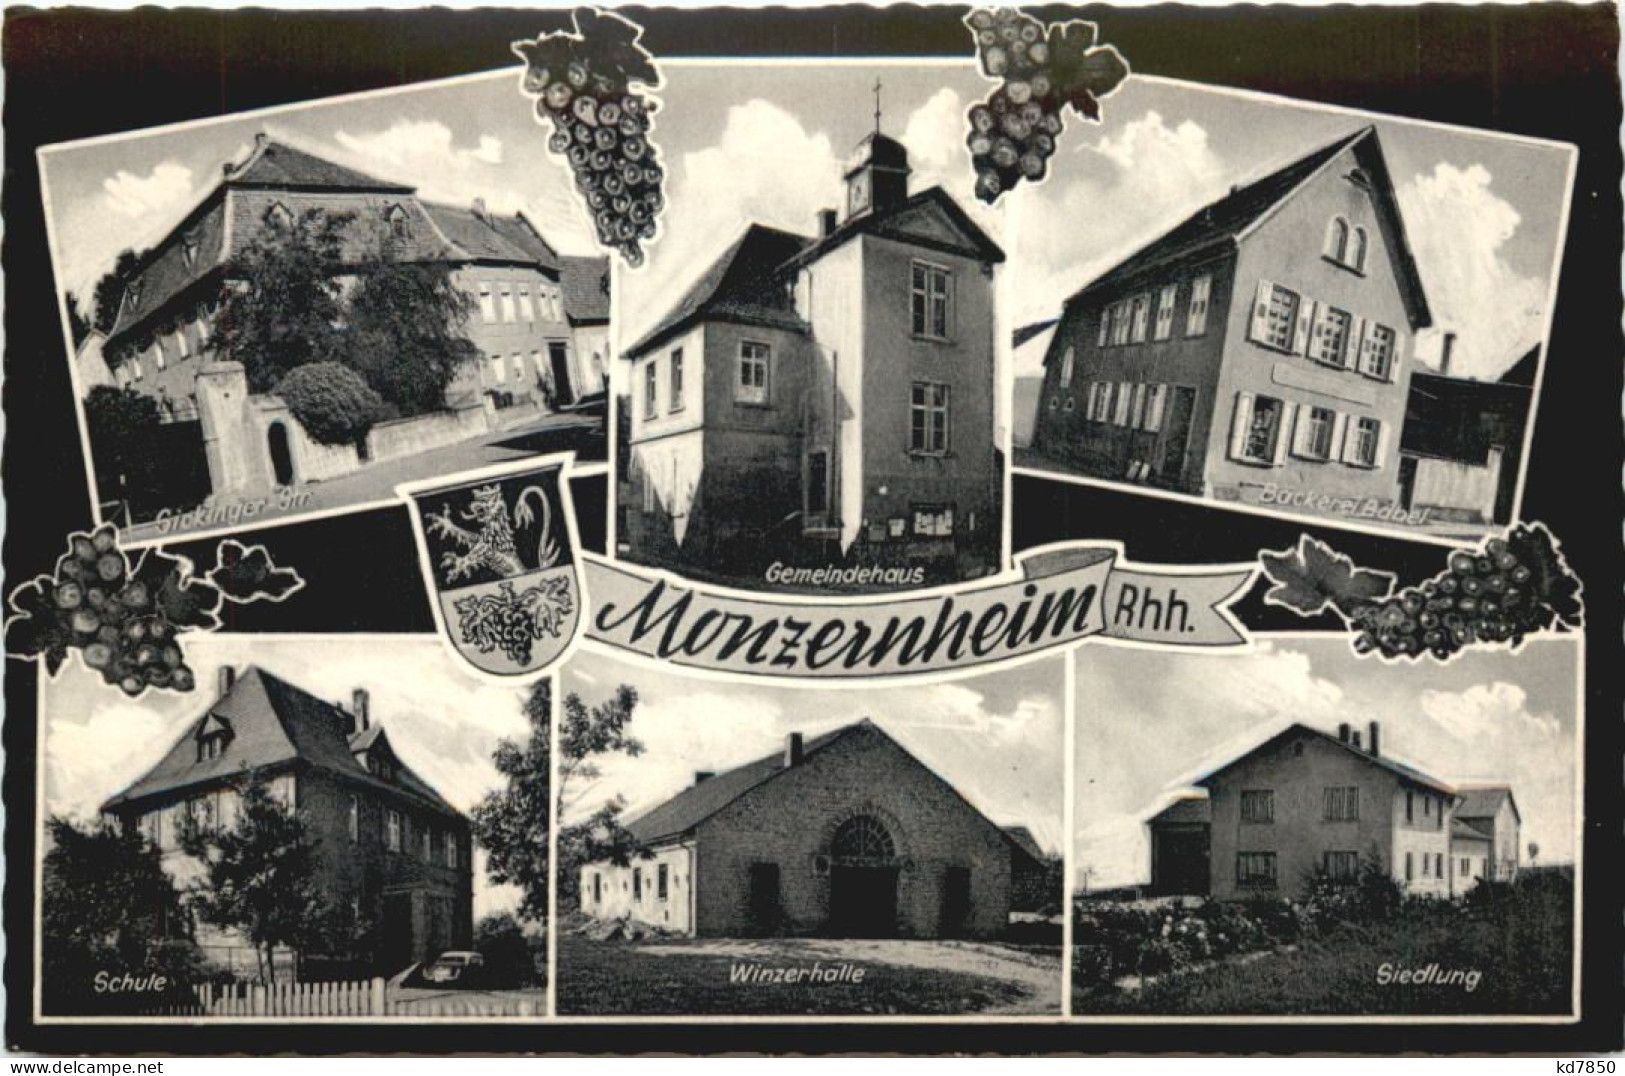 Monzernheim Rheinhessen - Alzey